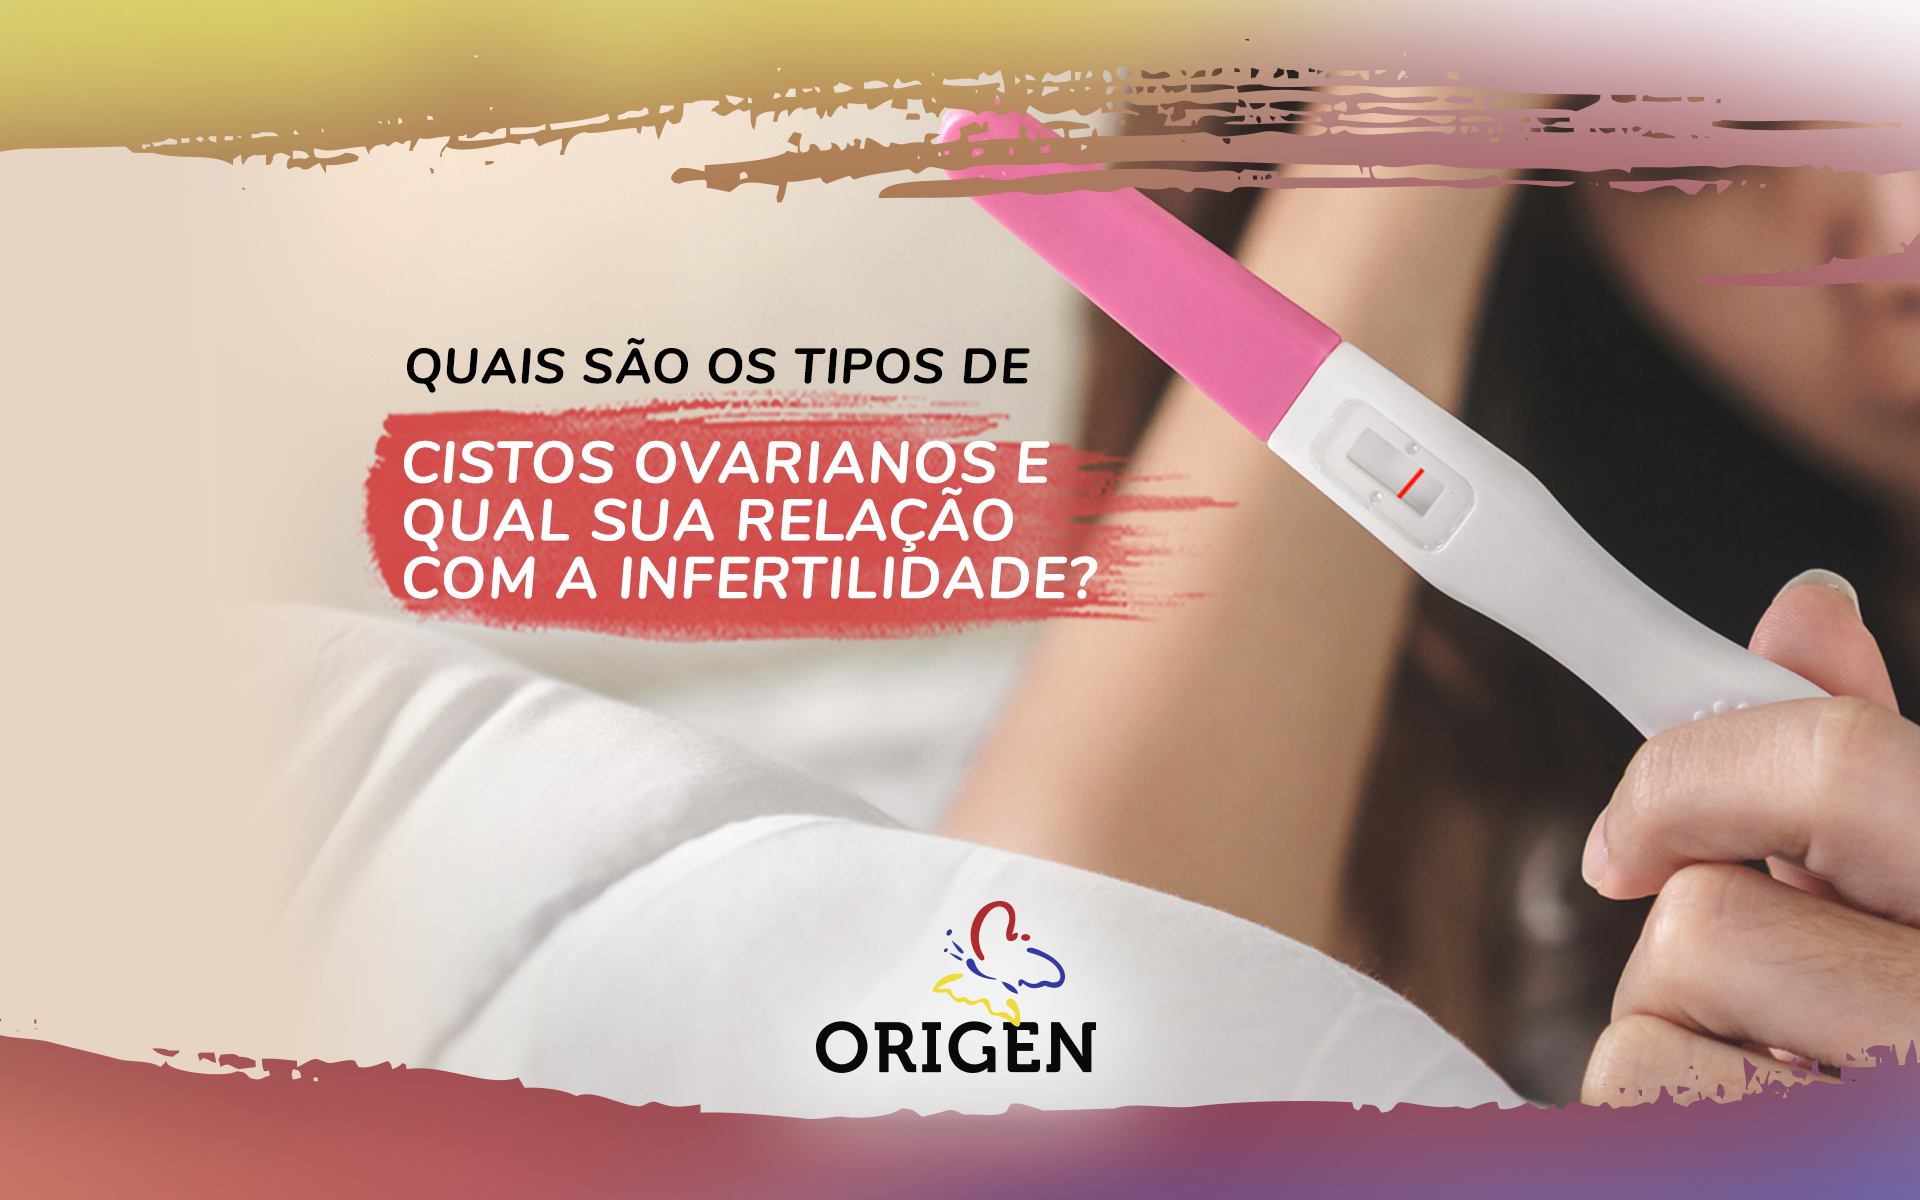 Quais são os tipos de cistos ovarianos e qual sua relação com a infertilidade?